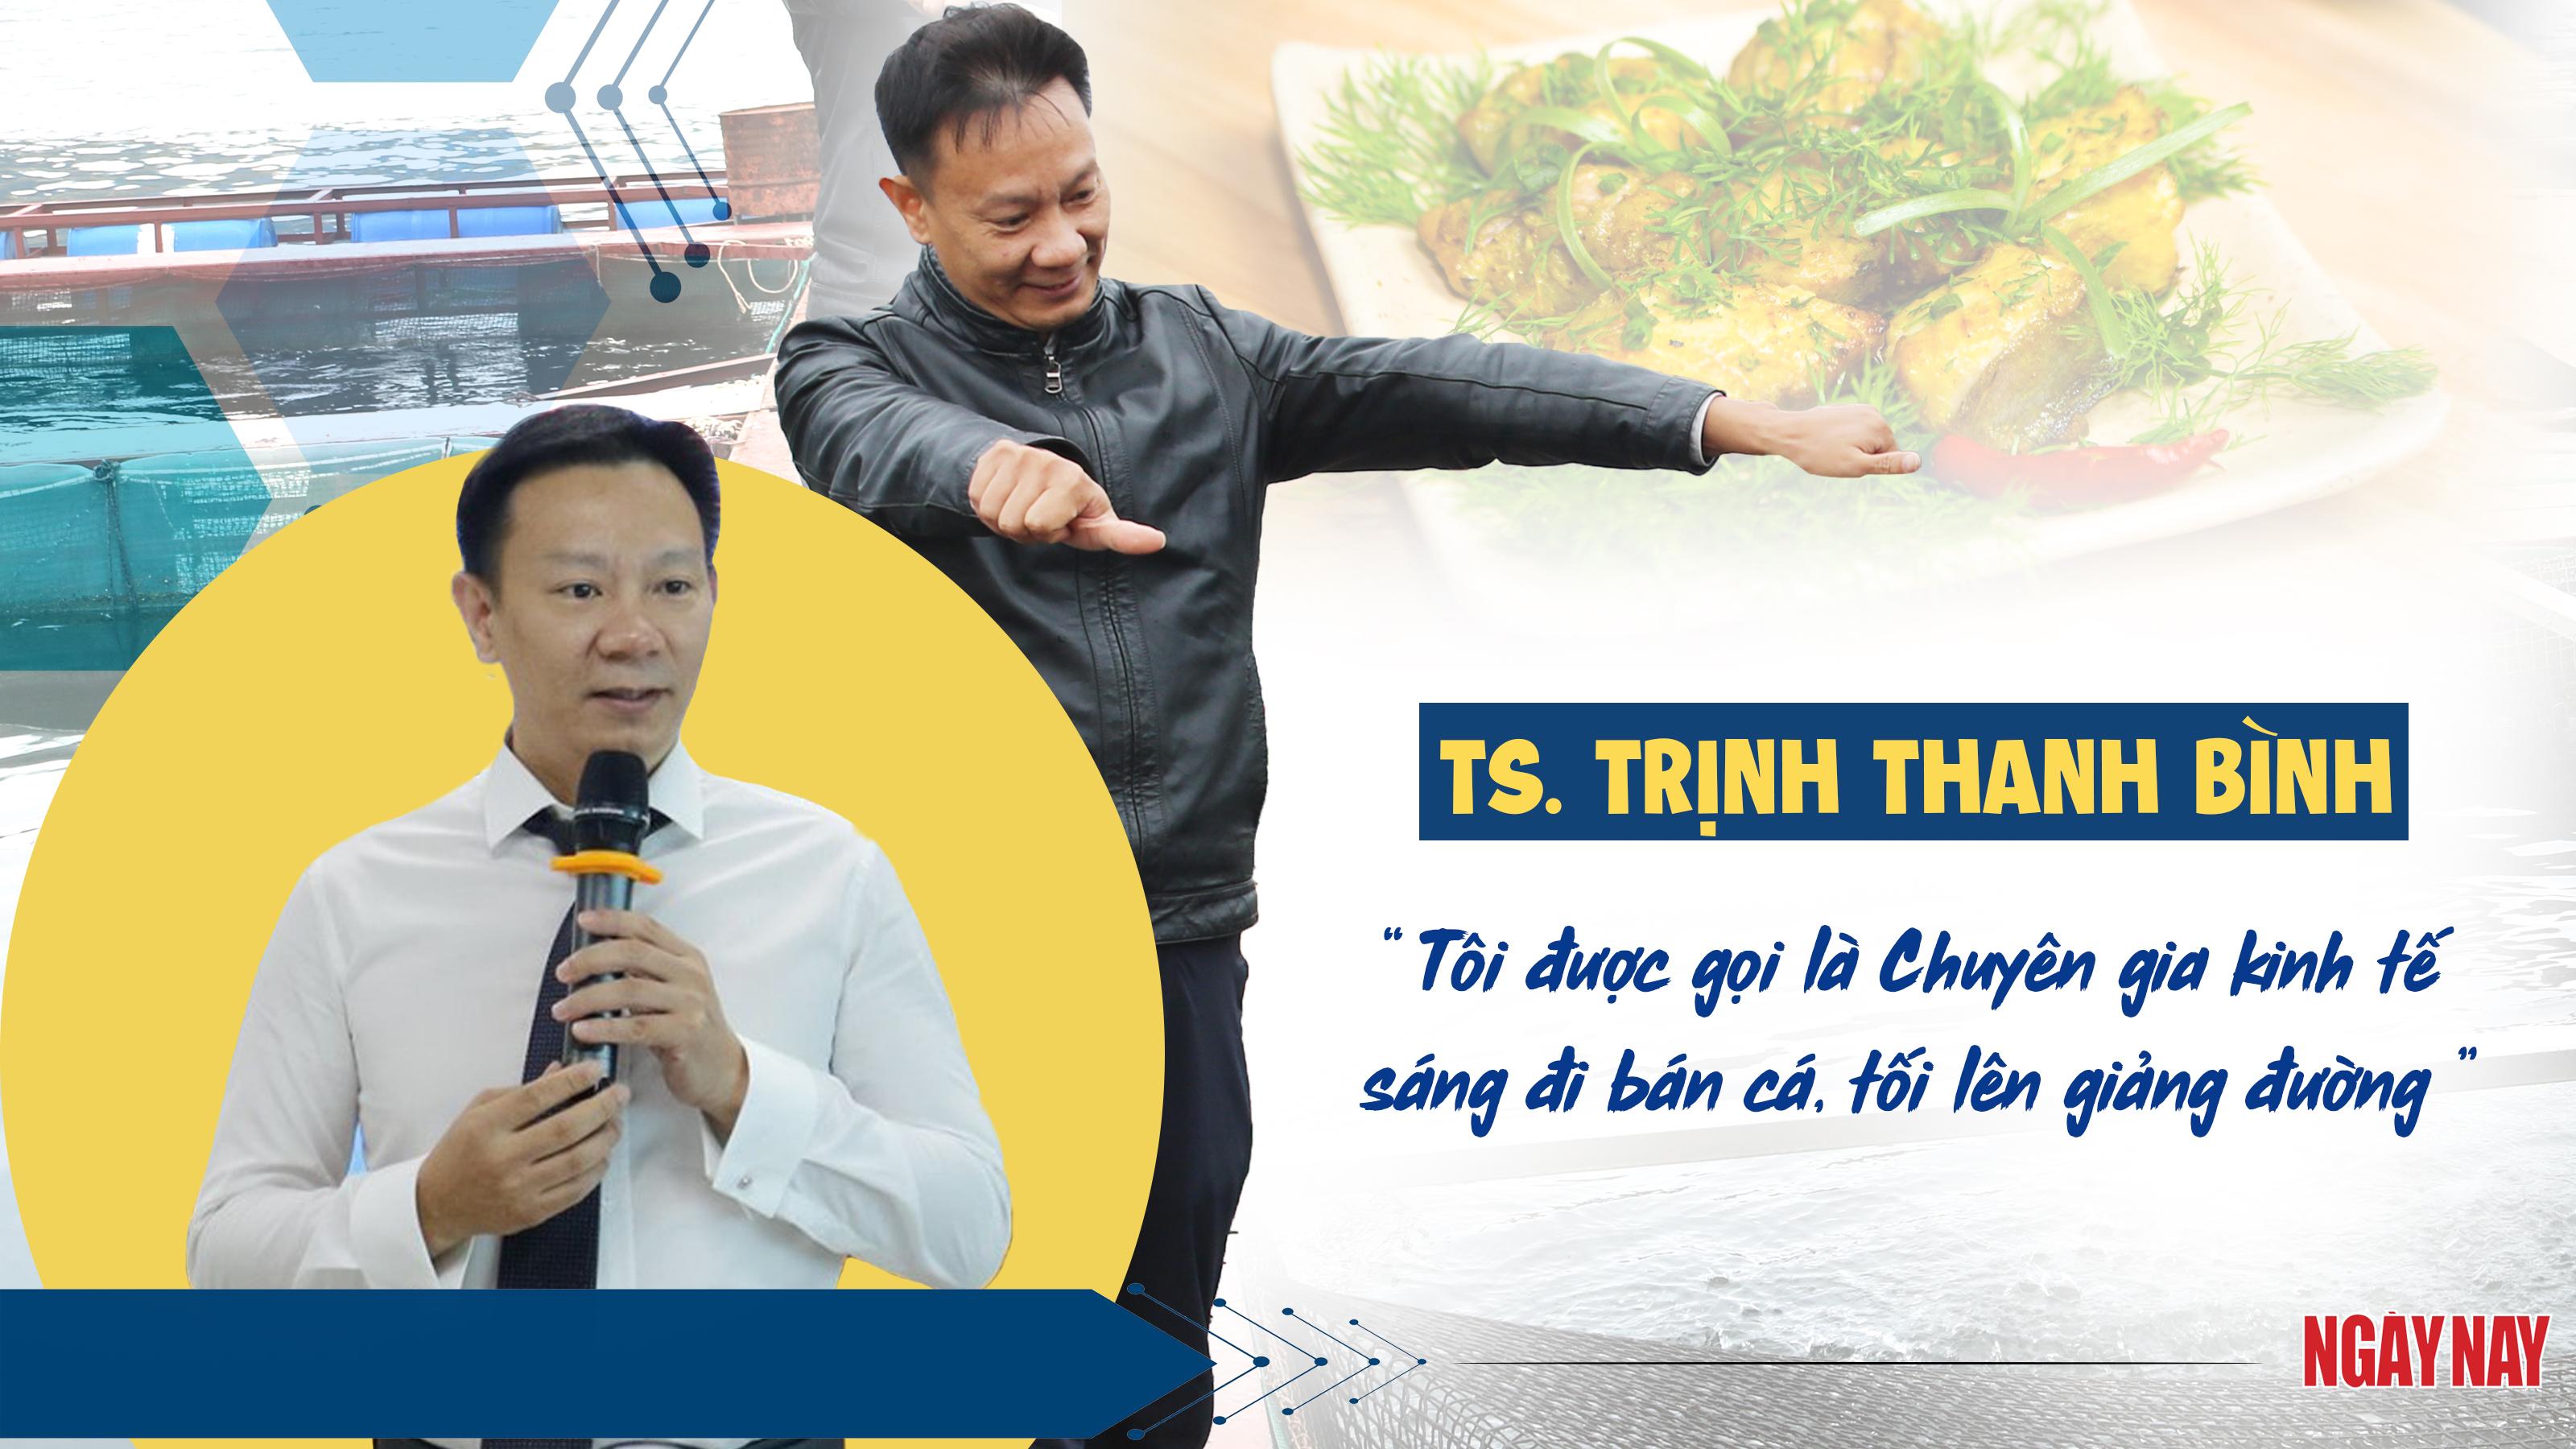 TS. Trịnh Thanh Bình: ‘Tôi được gọi là chuyên gia kinh tế sáng đi bán cá, tối lên giảng đường’